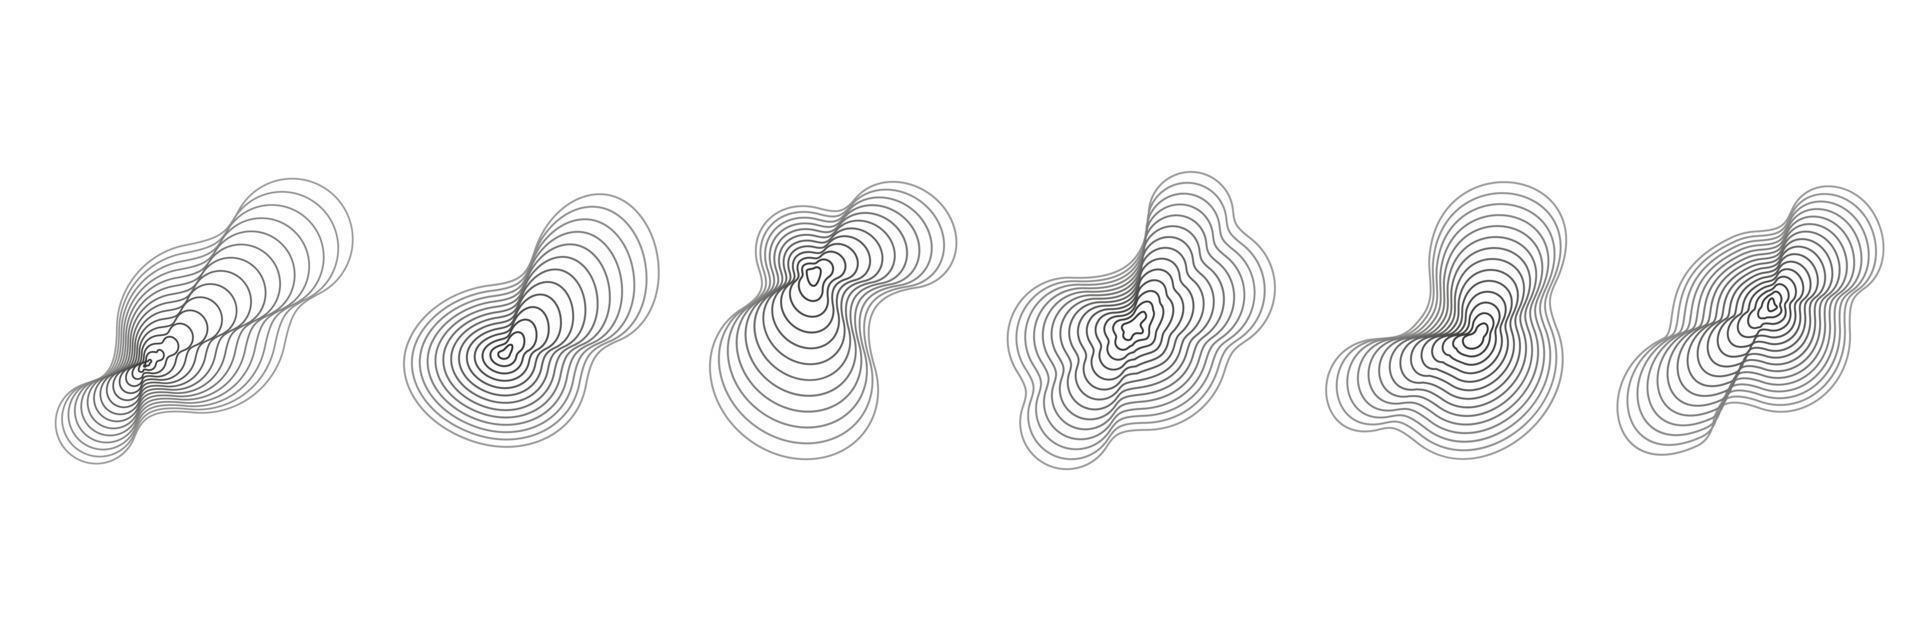 abstrakt topografi cirklar. organisk textur former. vektor översikt illustrationer uppsättning.